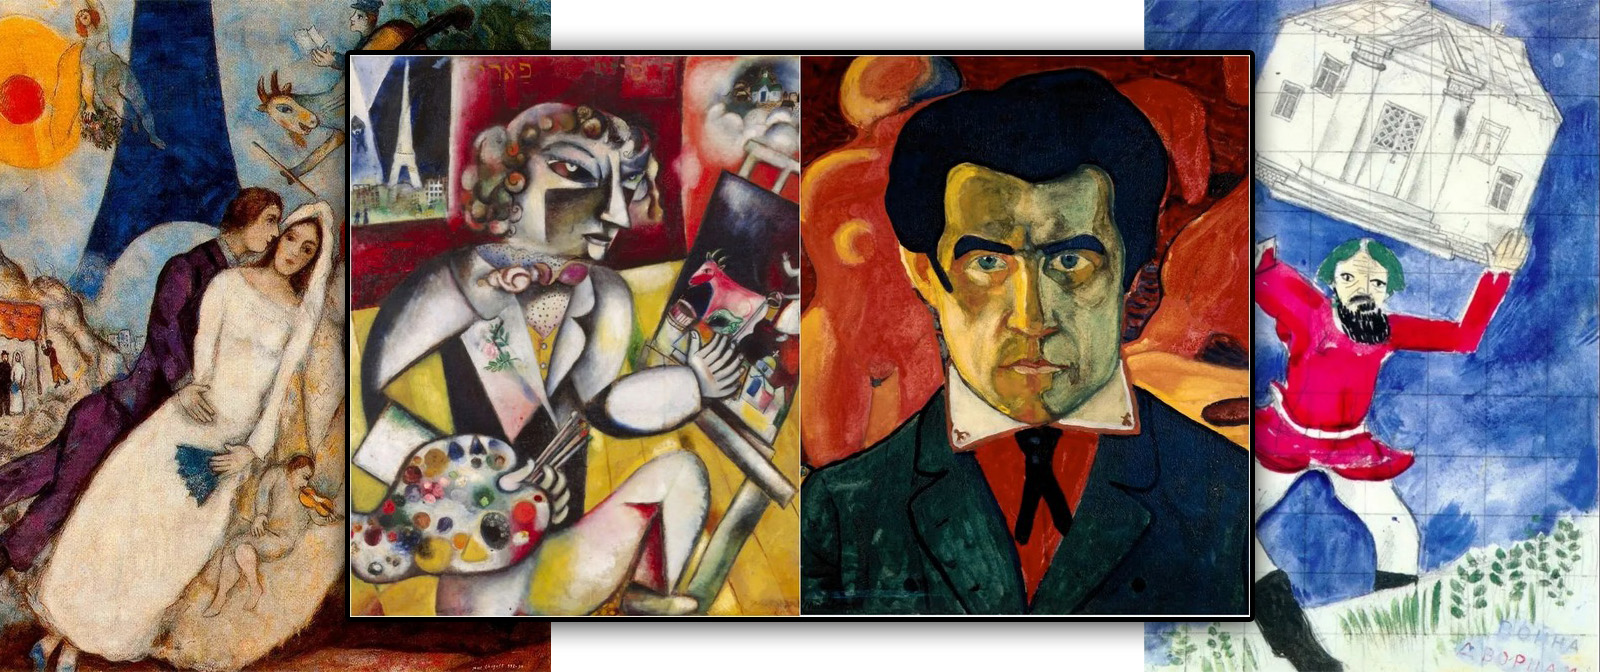 Враги: Казимир Малевич и Марк Шагал. Почему отношения между художниками были такими напряженными?